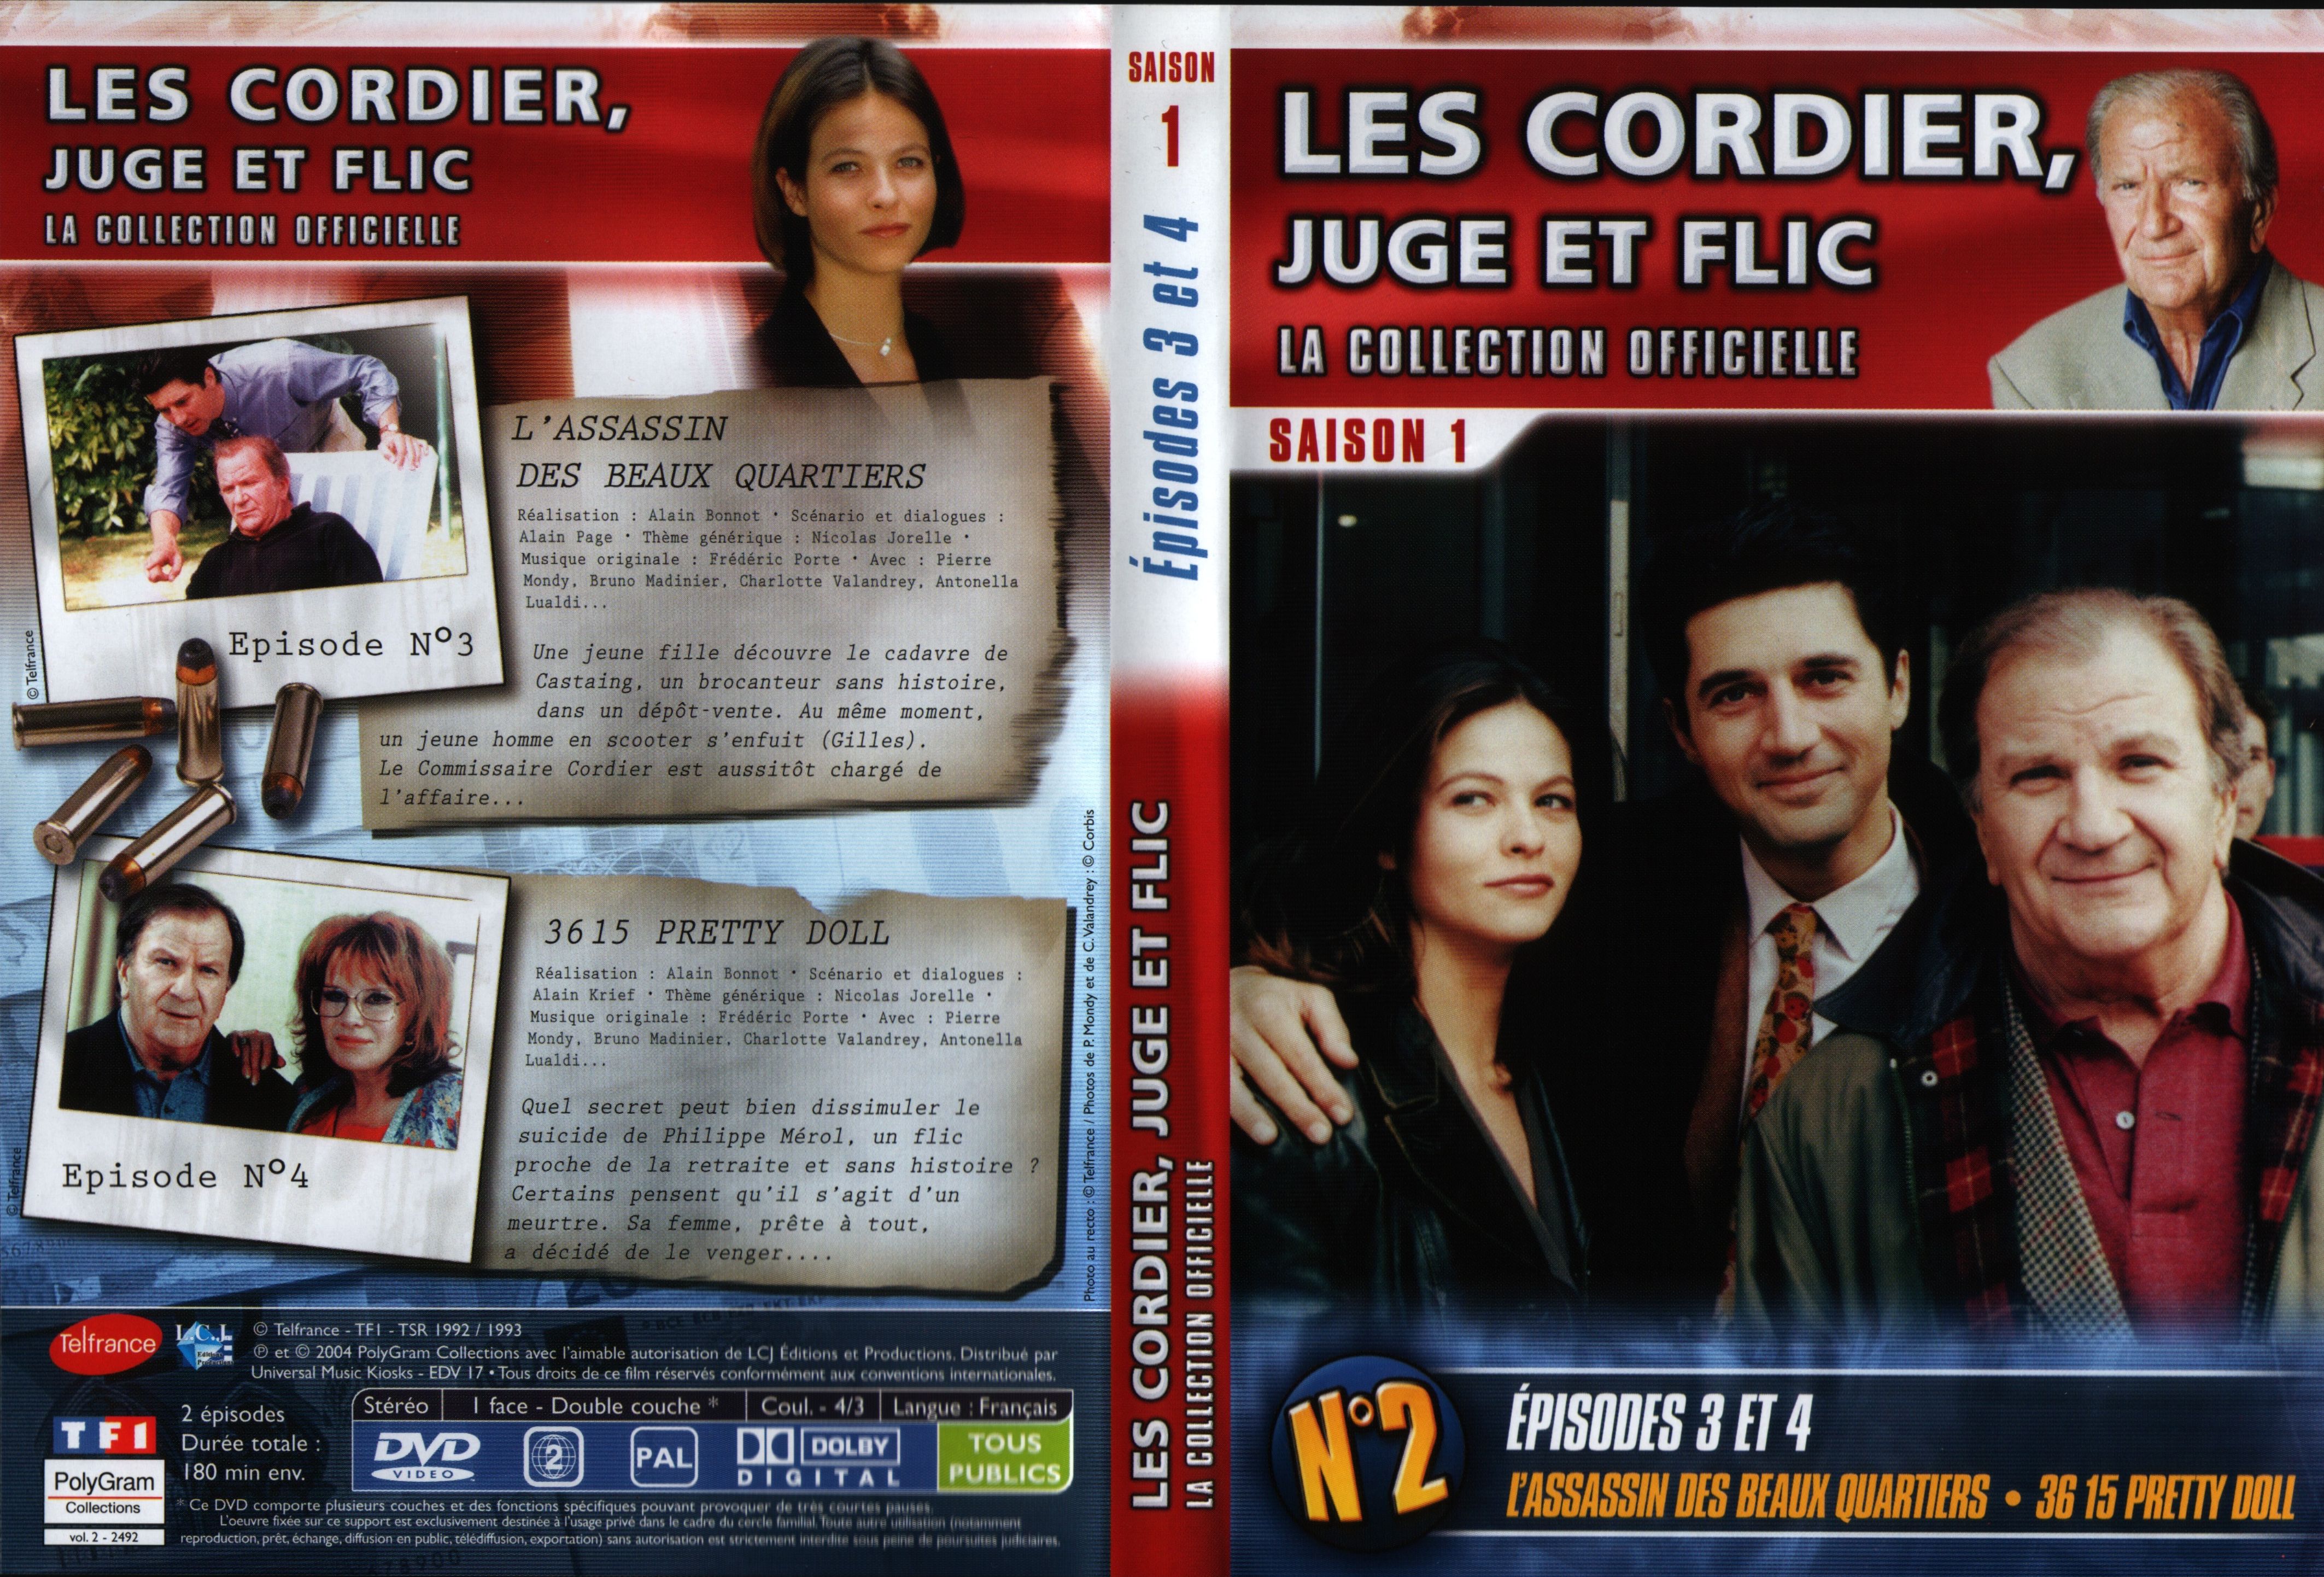 Jaquette DVD Les cordier juge et flic Saison 1 vol 2